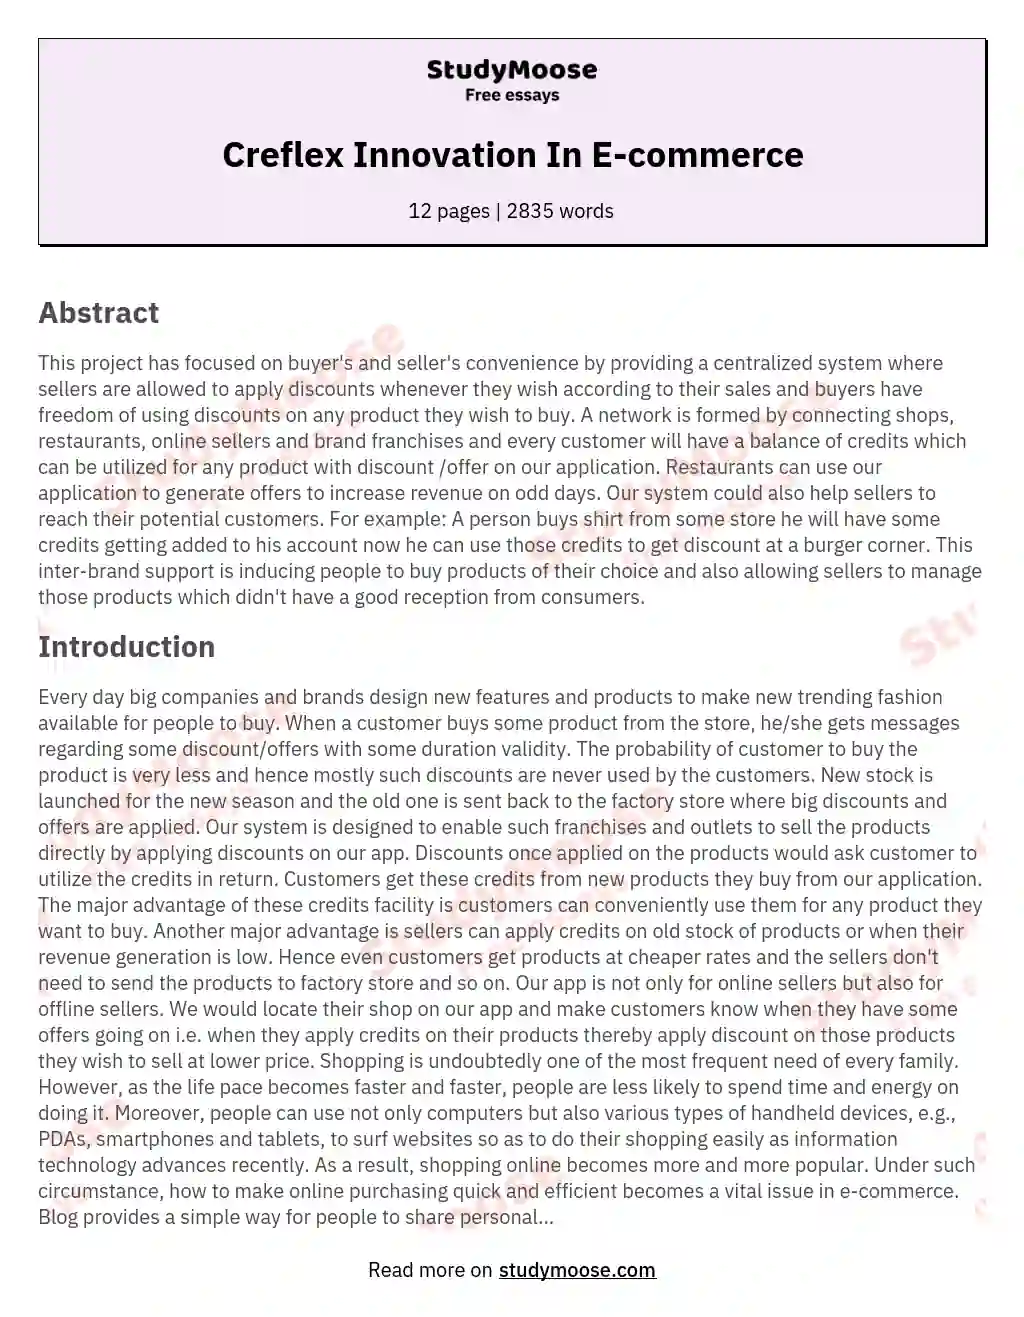 Creflex Innovation In E-commerce essay